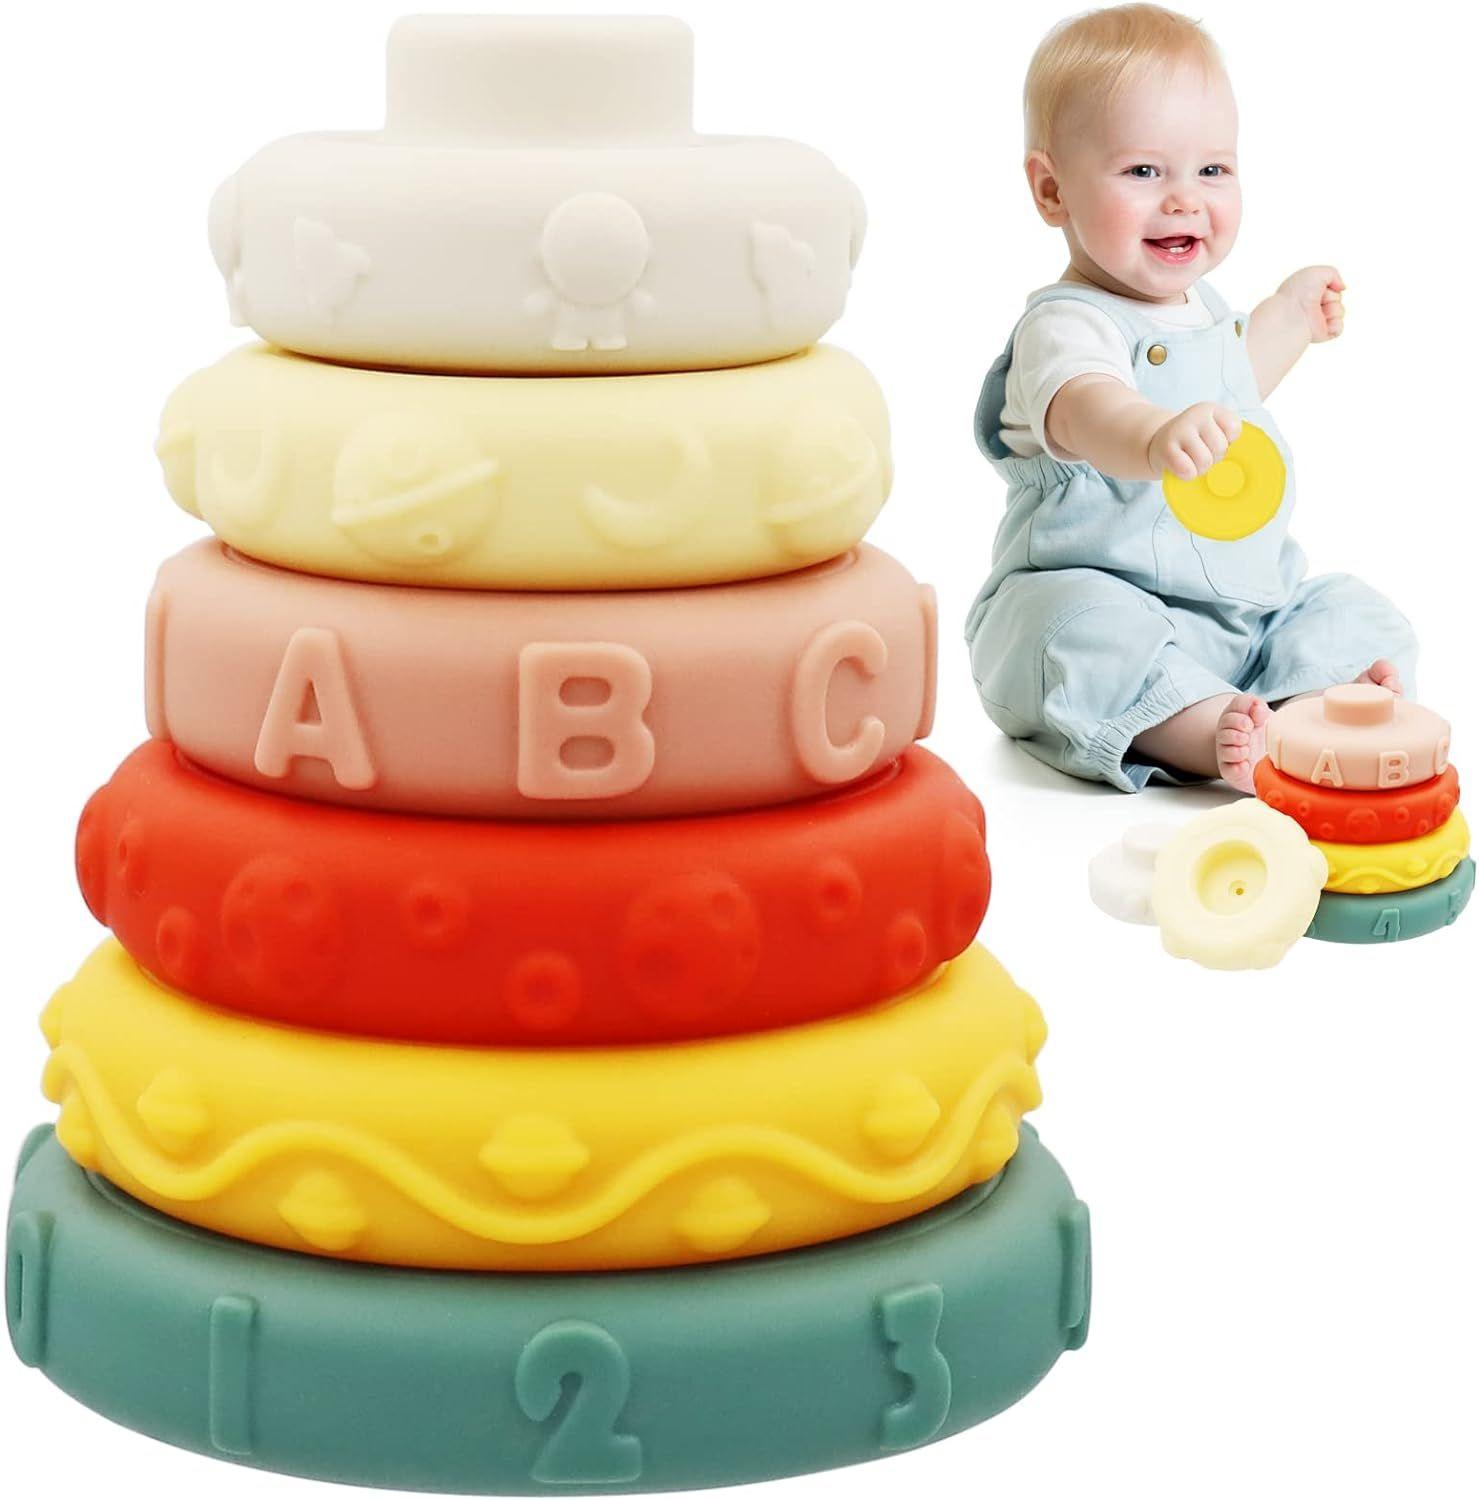 Ensemble de jouets empilables en Silicone pour bébé, couleurs arc-en-ciel